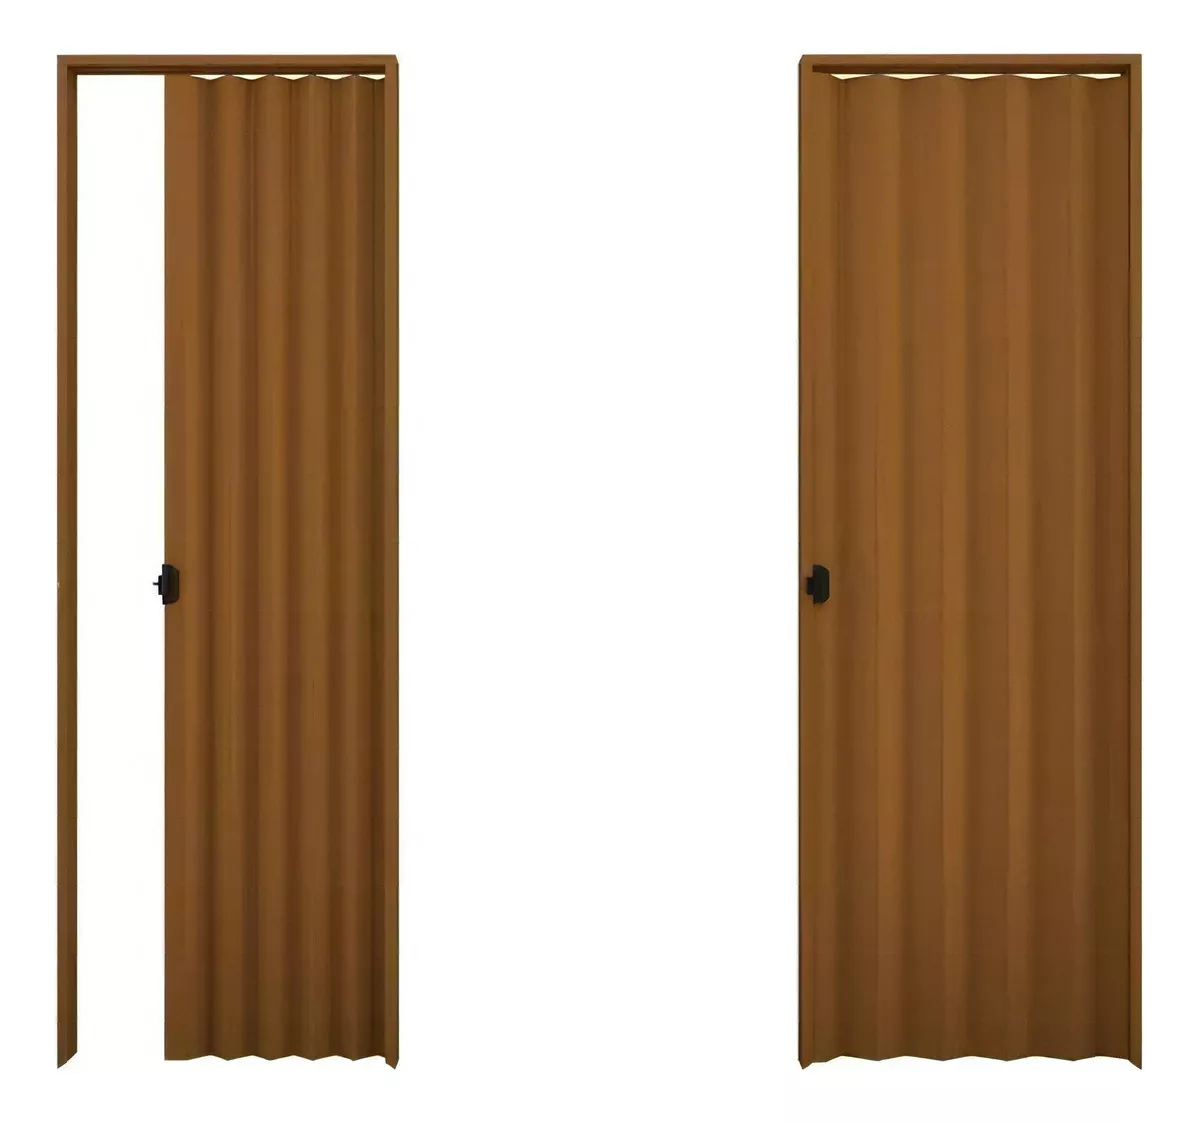 Tercera imagen para búsqueda de puertas plegables de madera